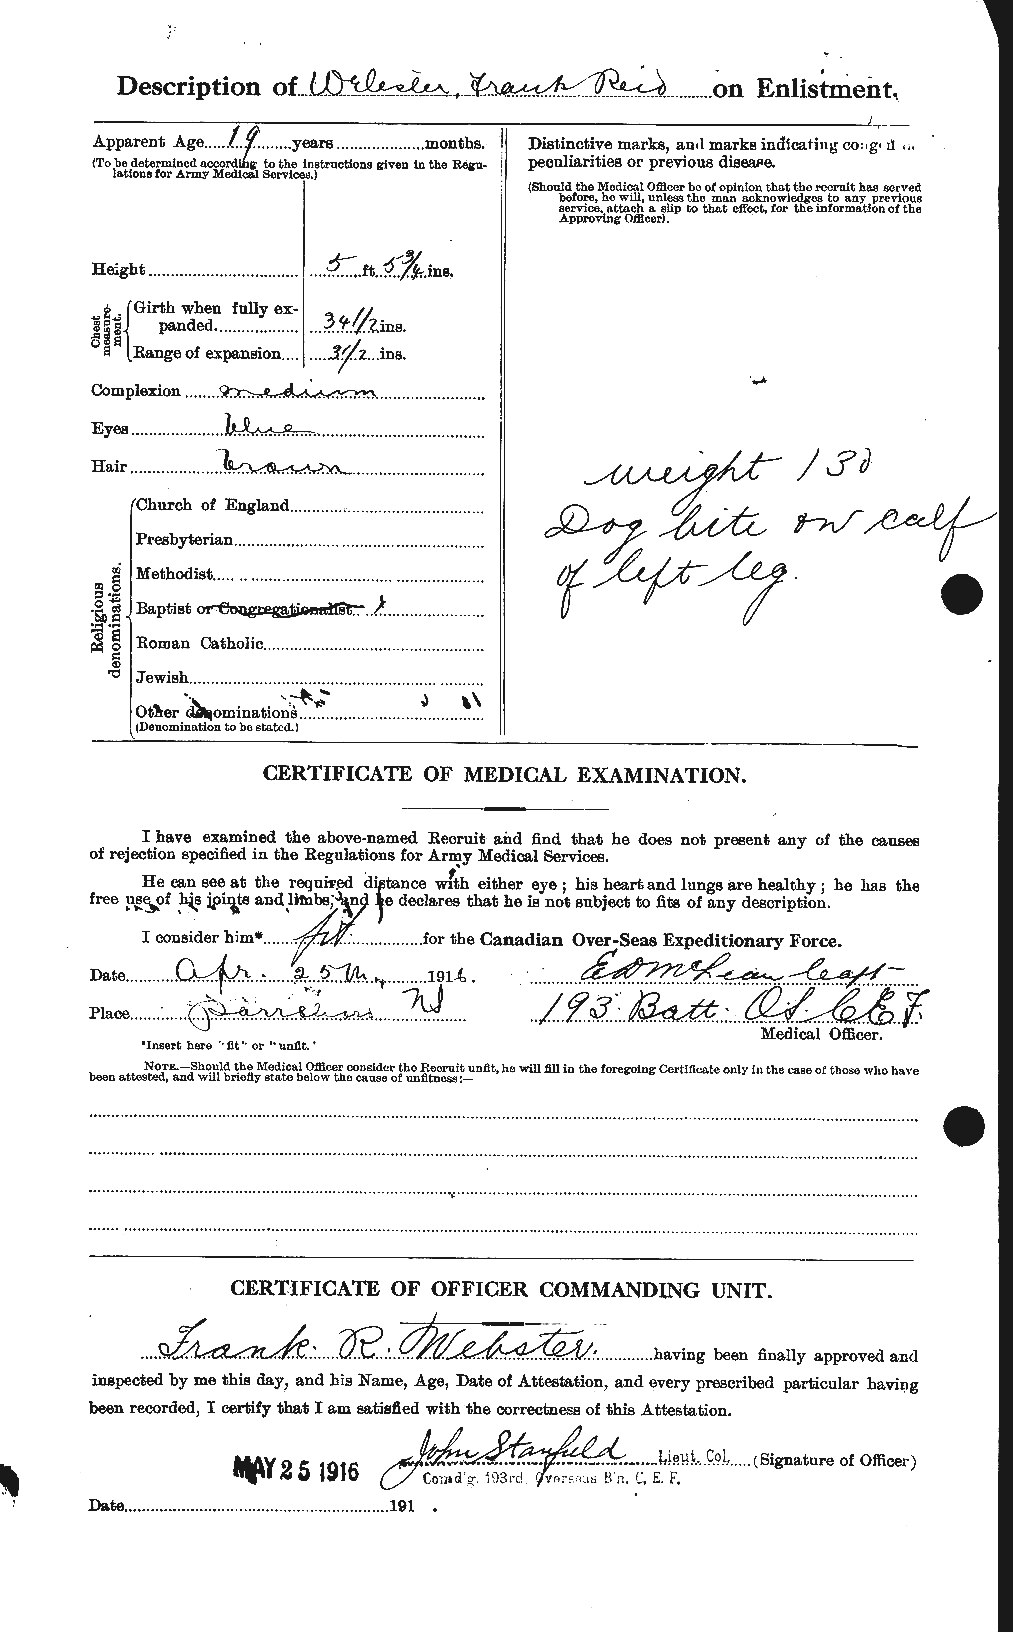 Dossiers du Personnel de la Première Guerre mondiale - CEC 670353b